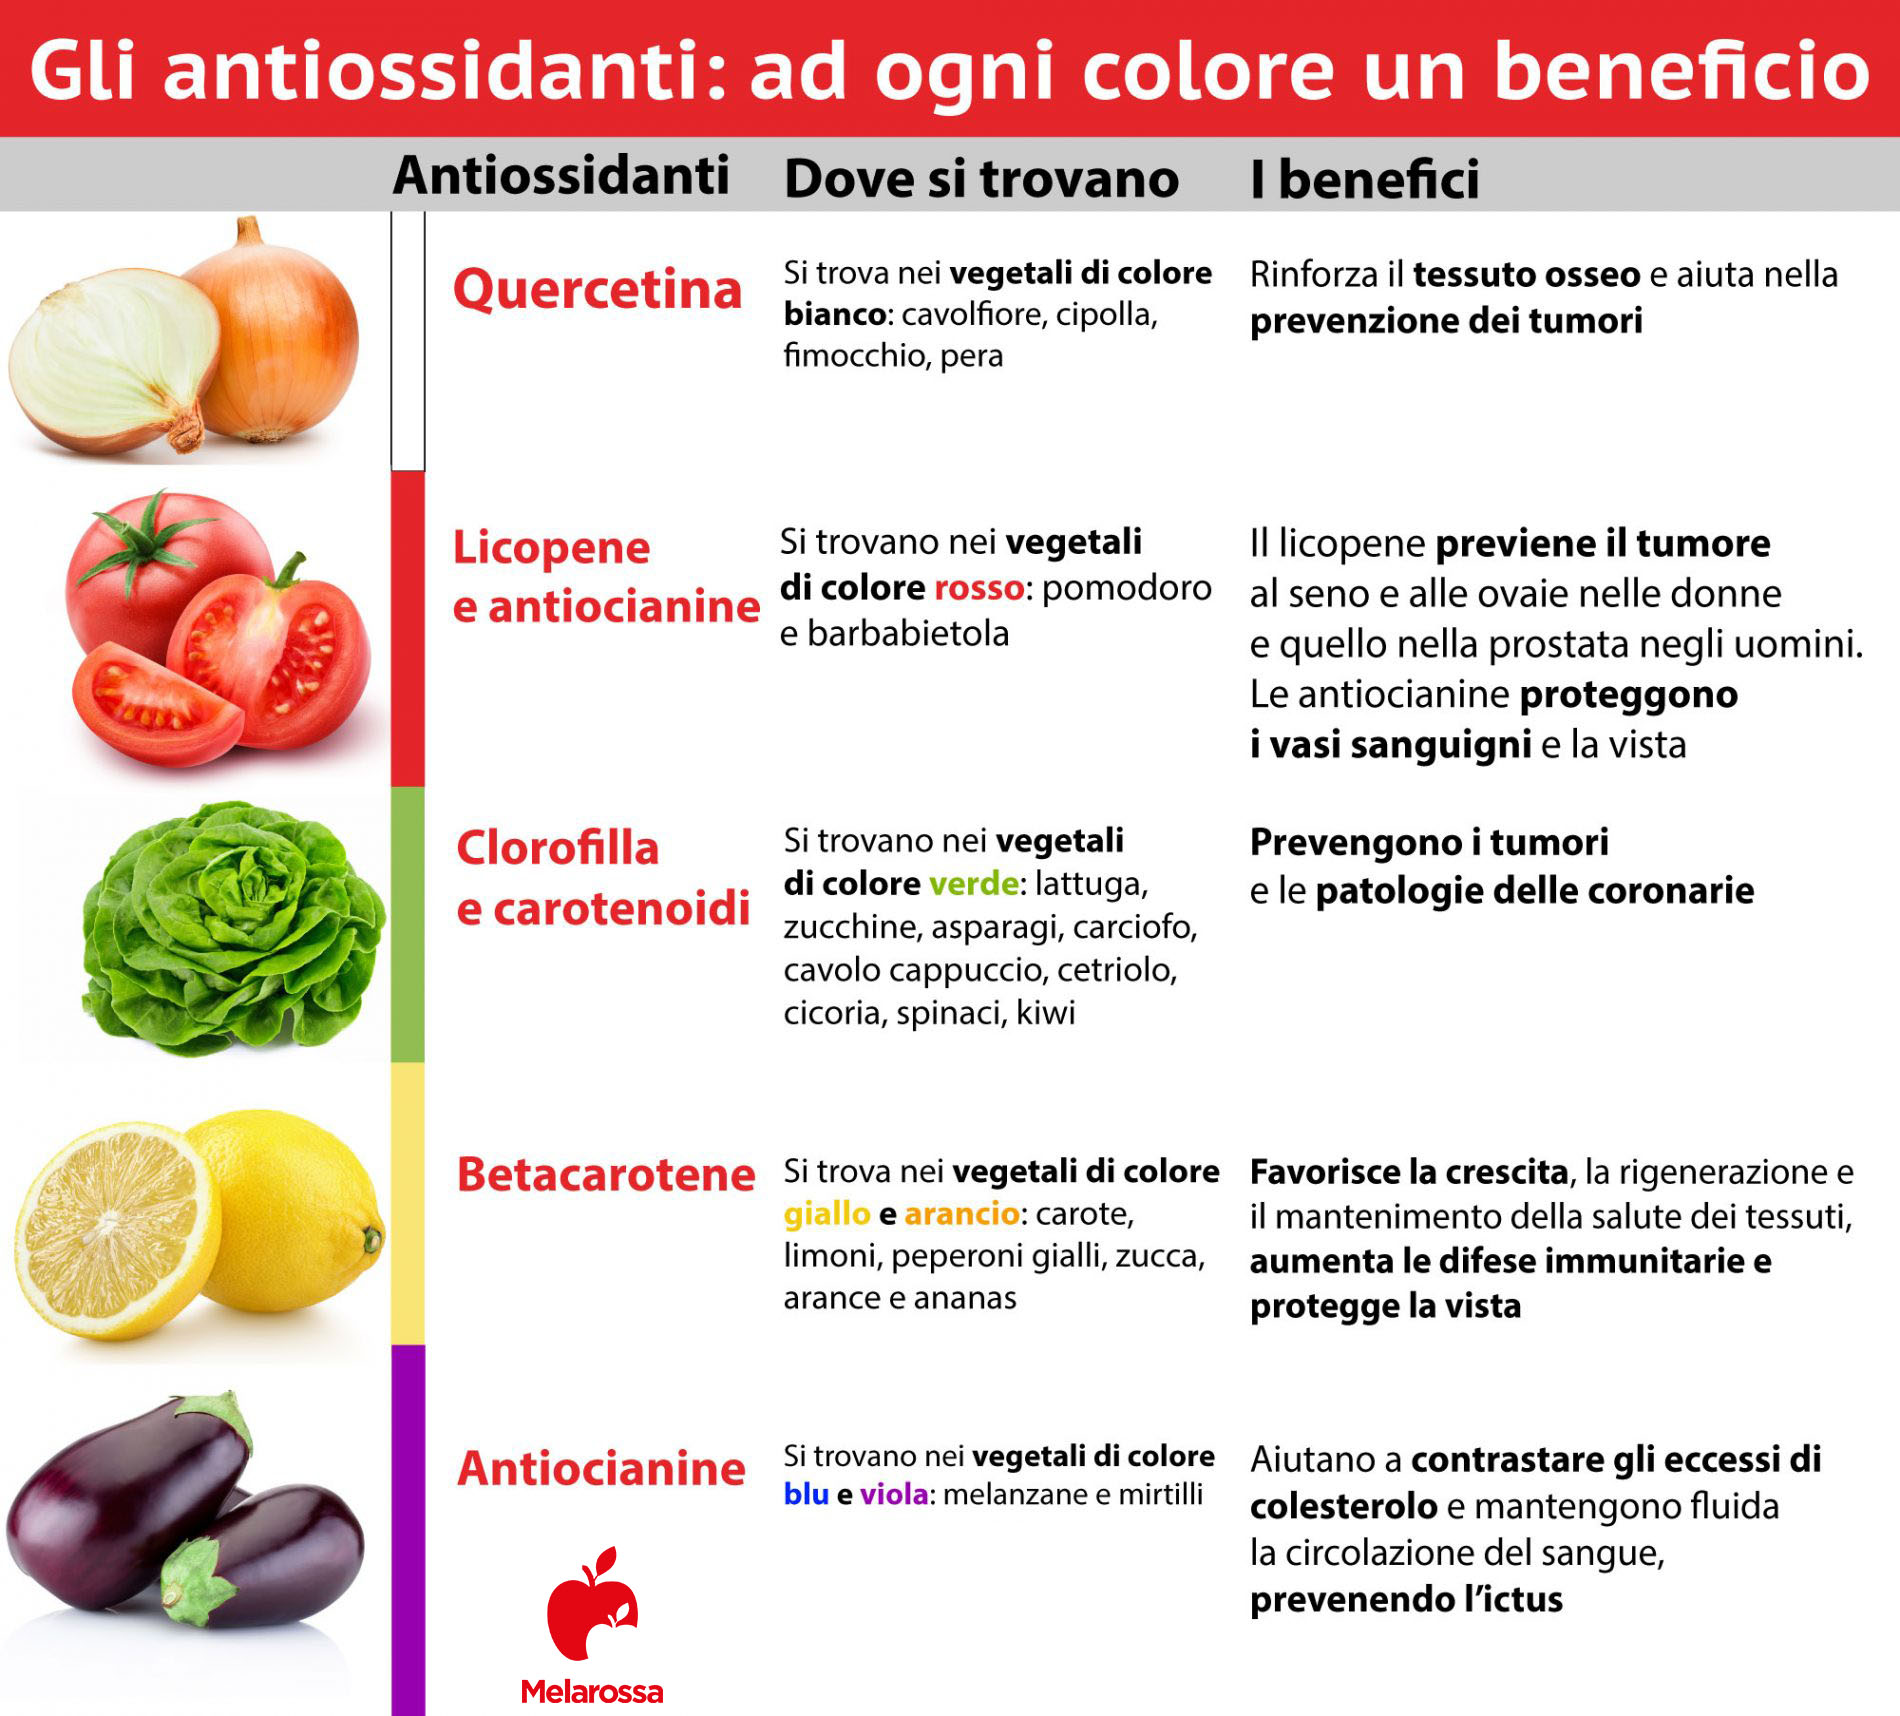 Antiossidanti: dove si trovano e benefici